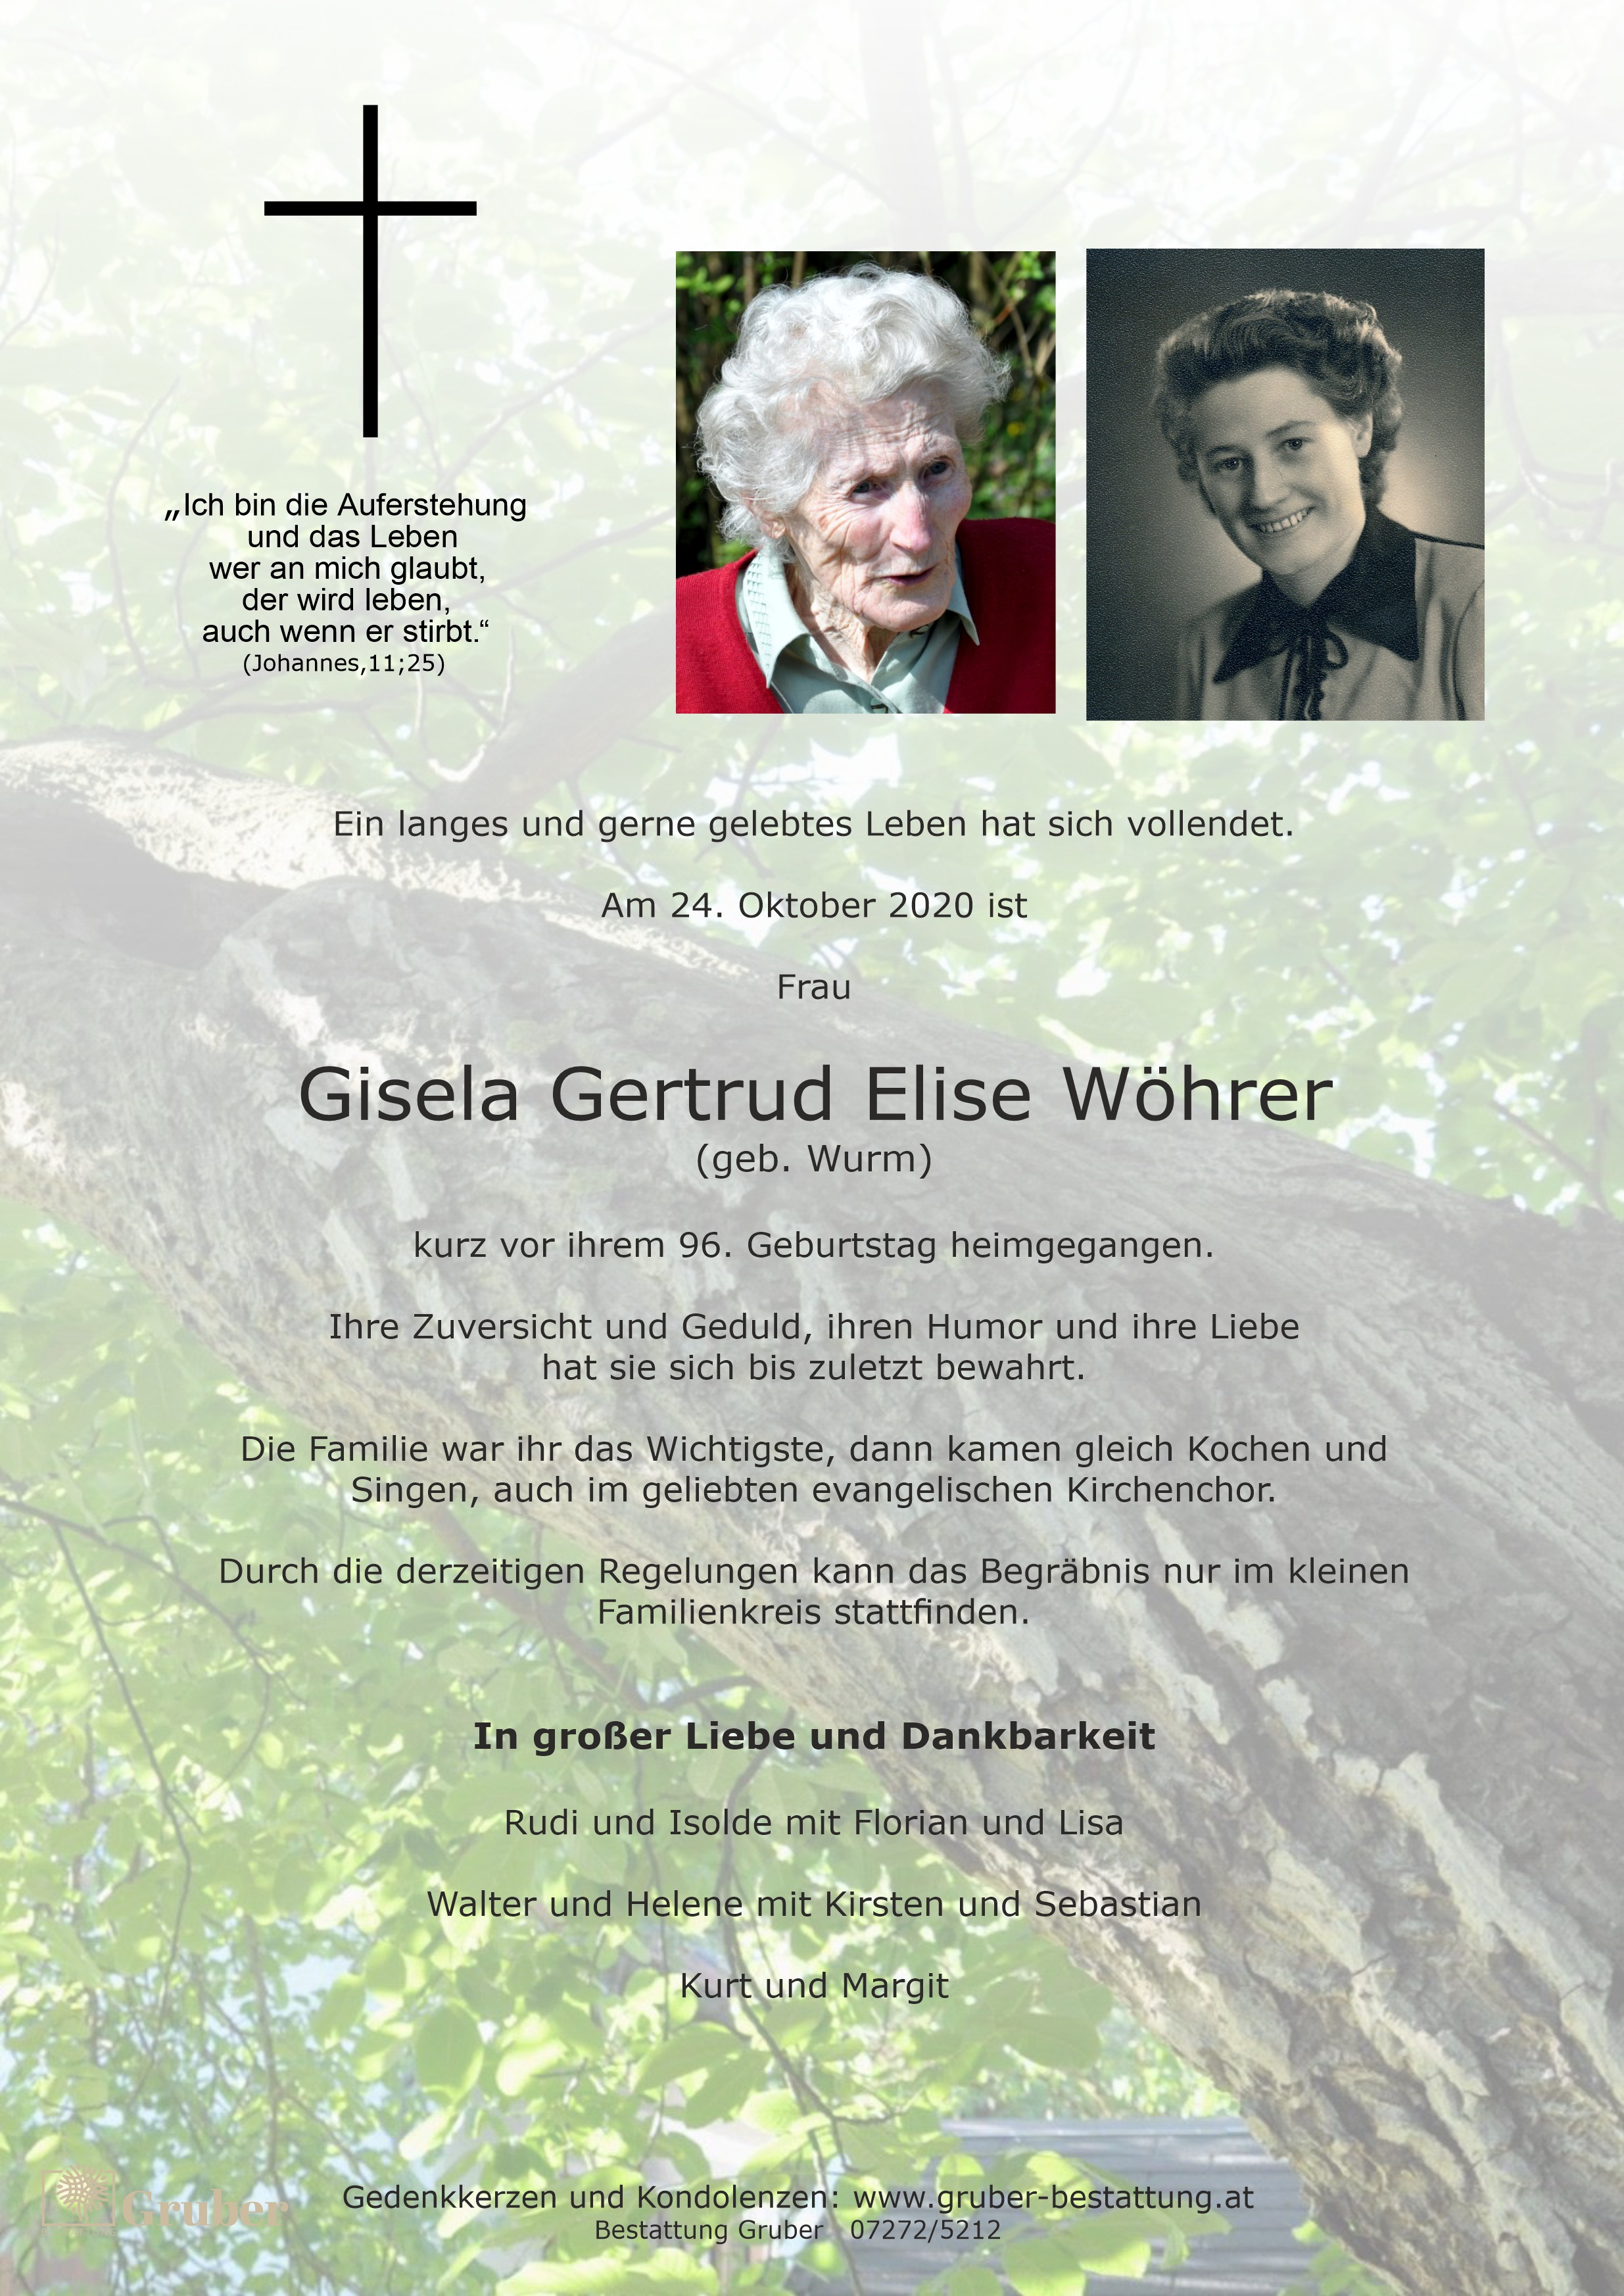 Gisela Gertrud Elise Wöhrer (Marchtrenk)